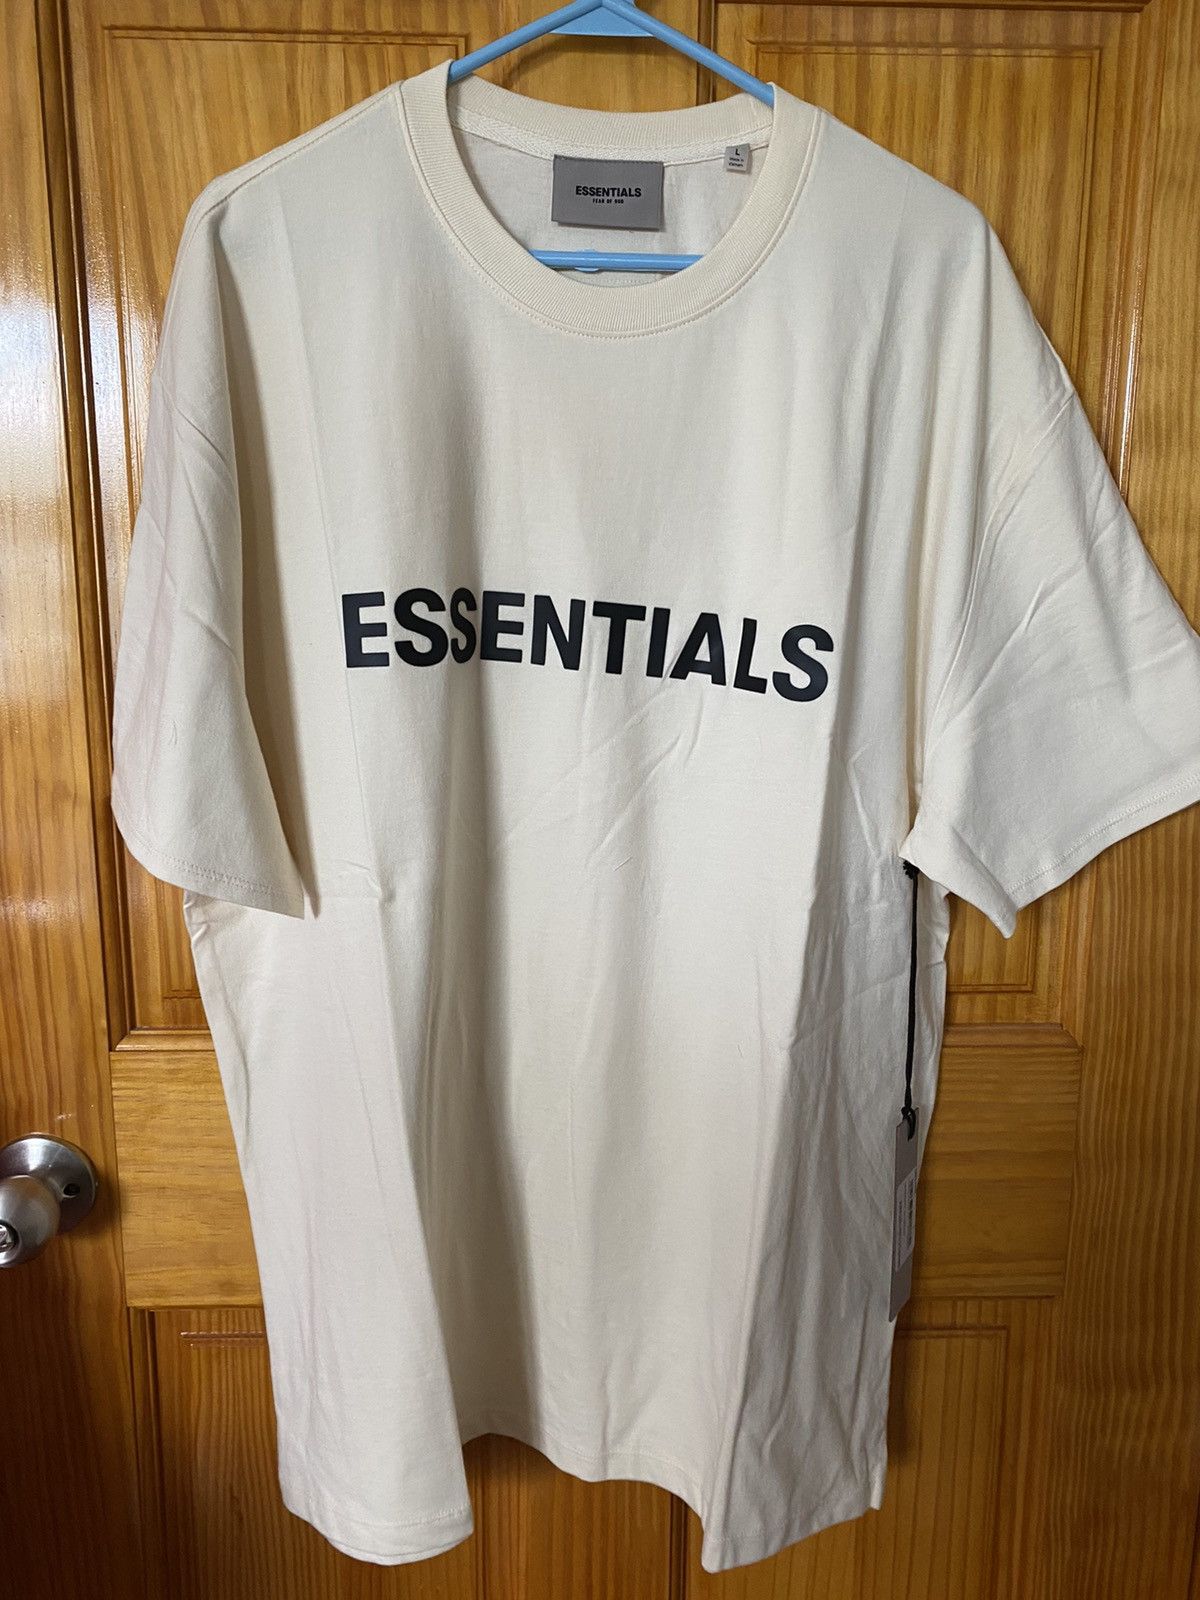 Essentials Ss20 TシャツCream-eastgate.mk